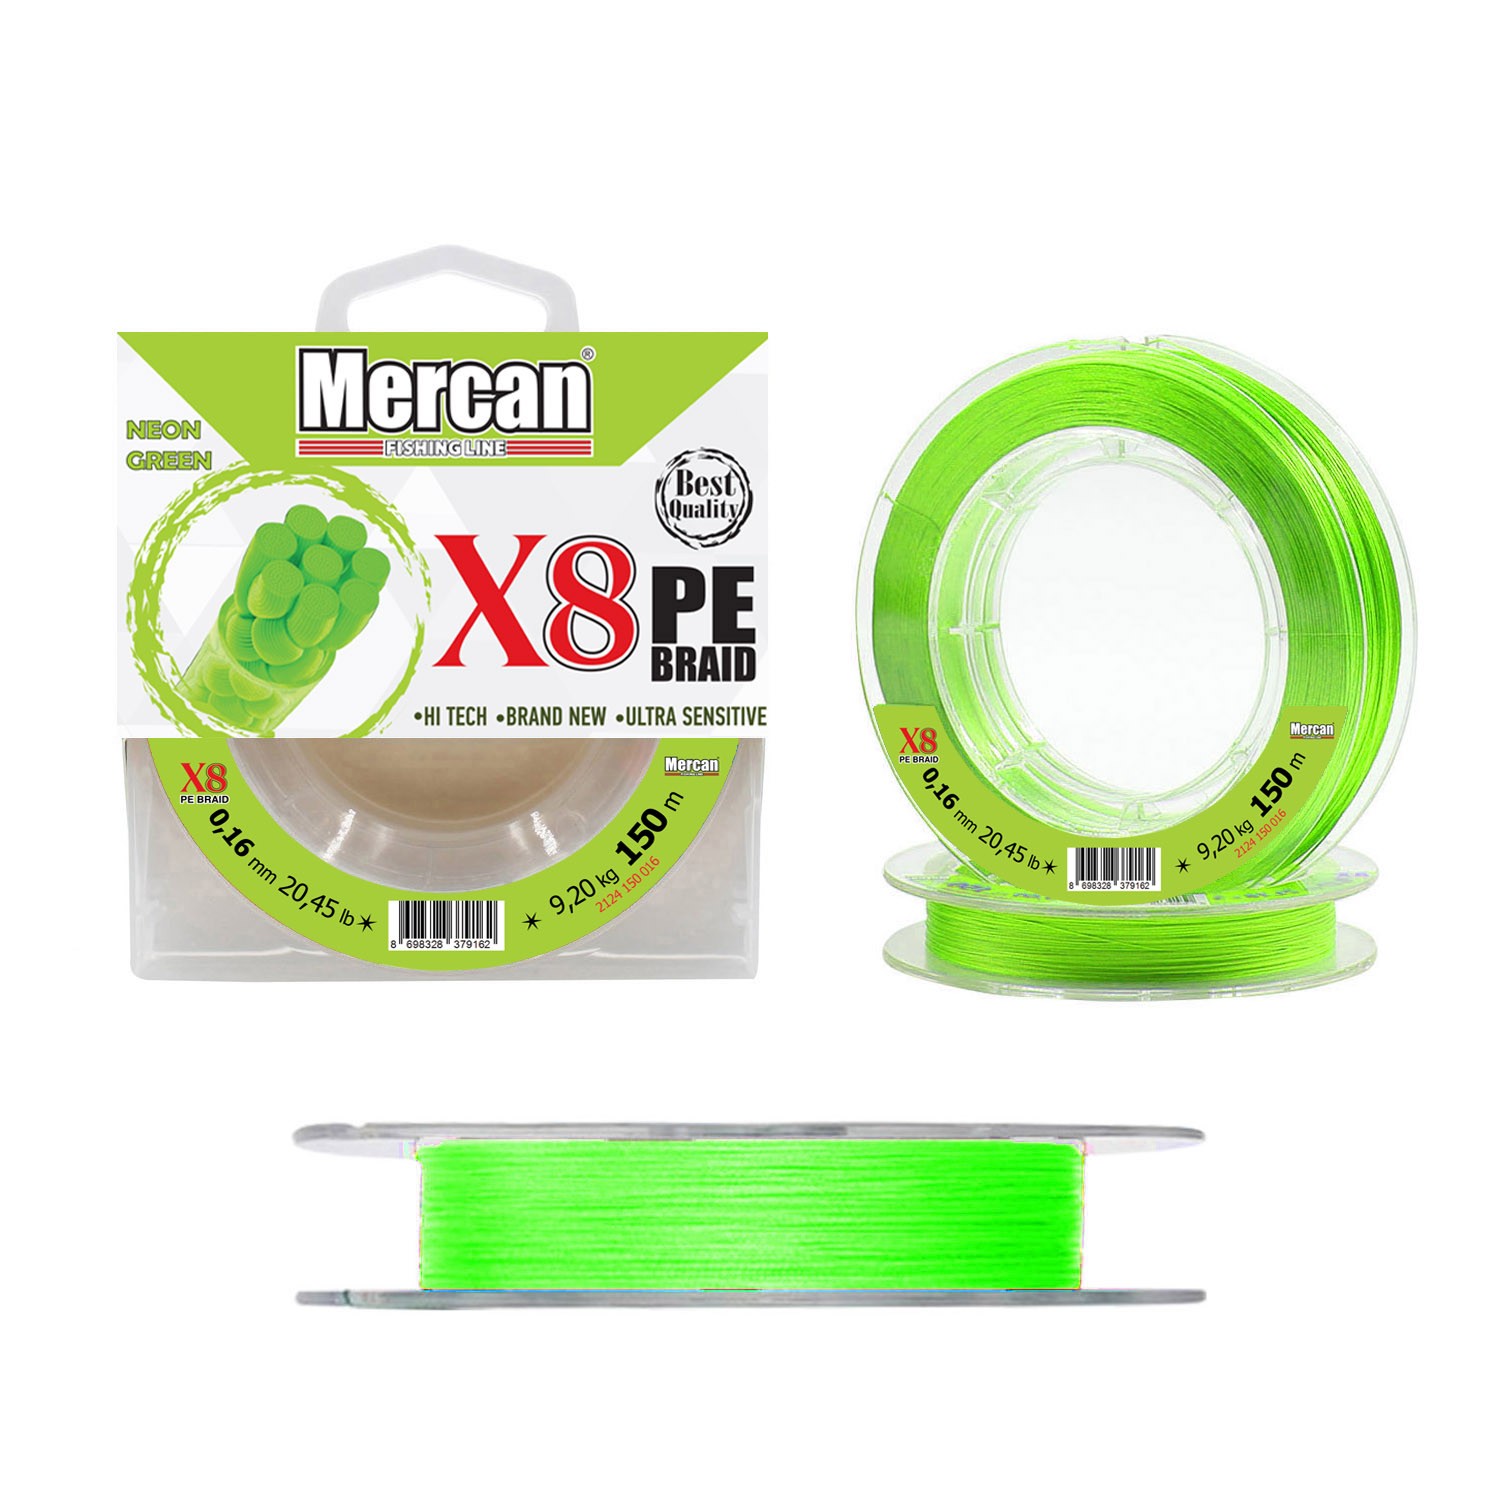 X8 Premıum Örgü Misina - Neon Yeşil